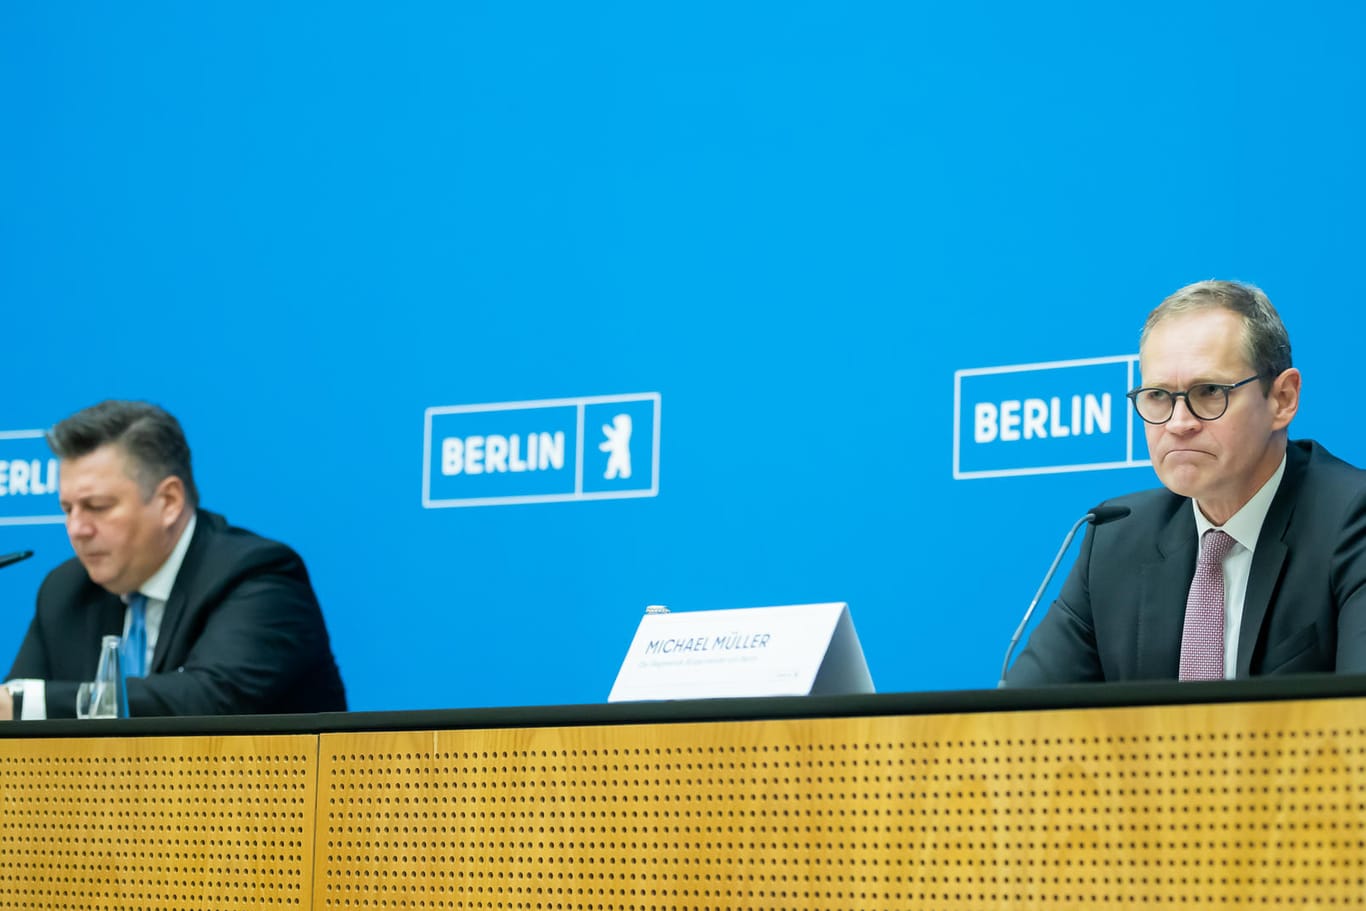 Michael Müller und Andreas Geisel bei einer Pressekonferenz: Die beiden SPD-Politiker glauben nicht, dass die Wahlen in Berlin wiederholt werden müssen.